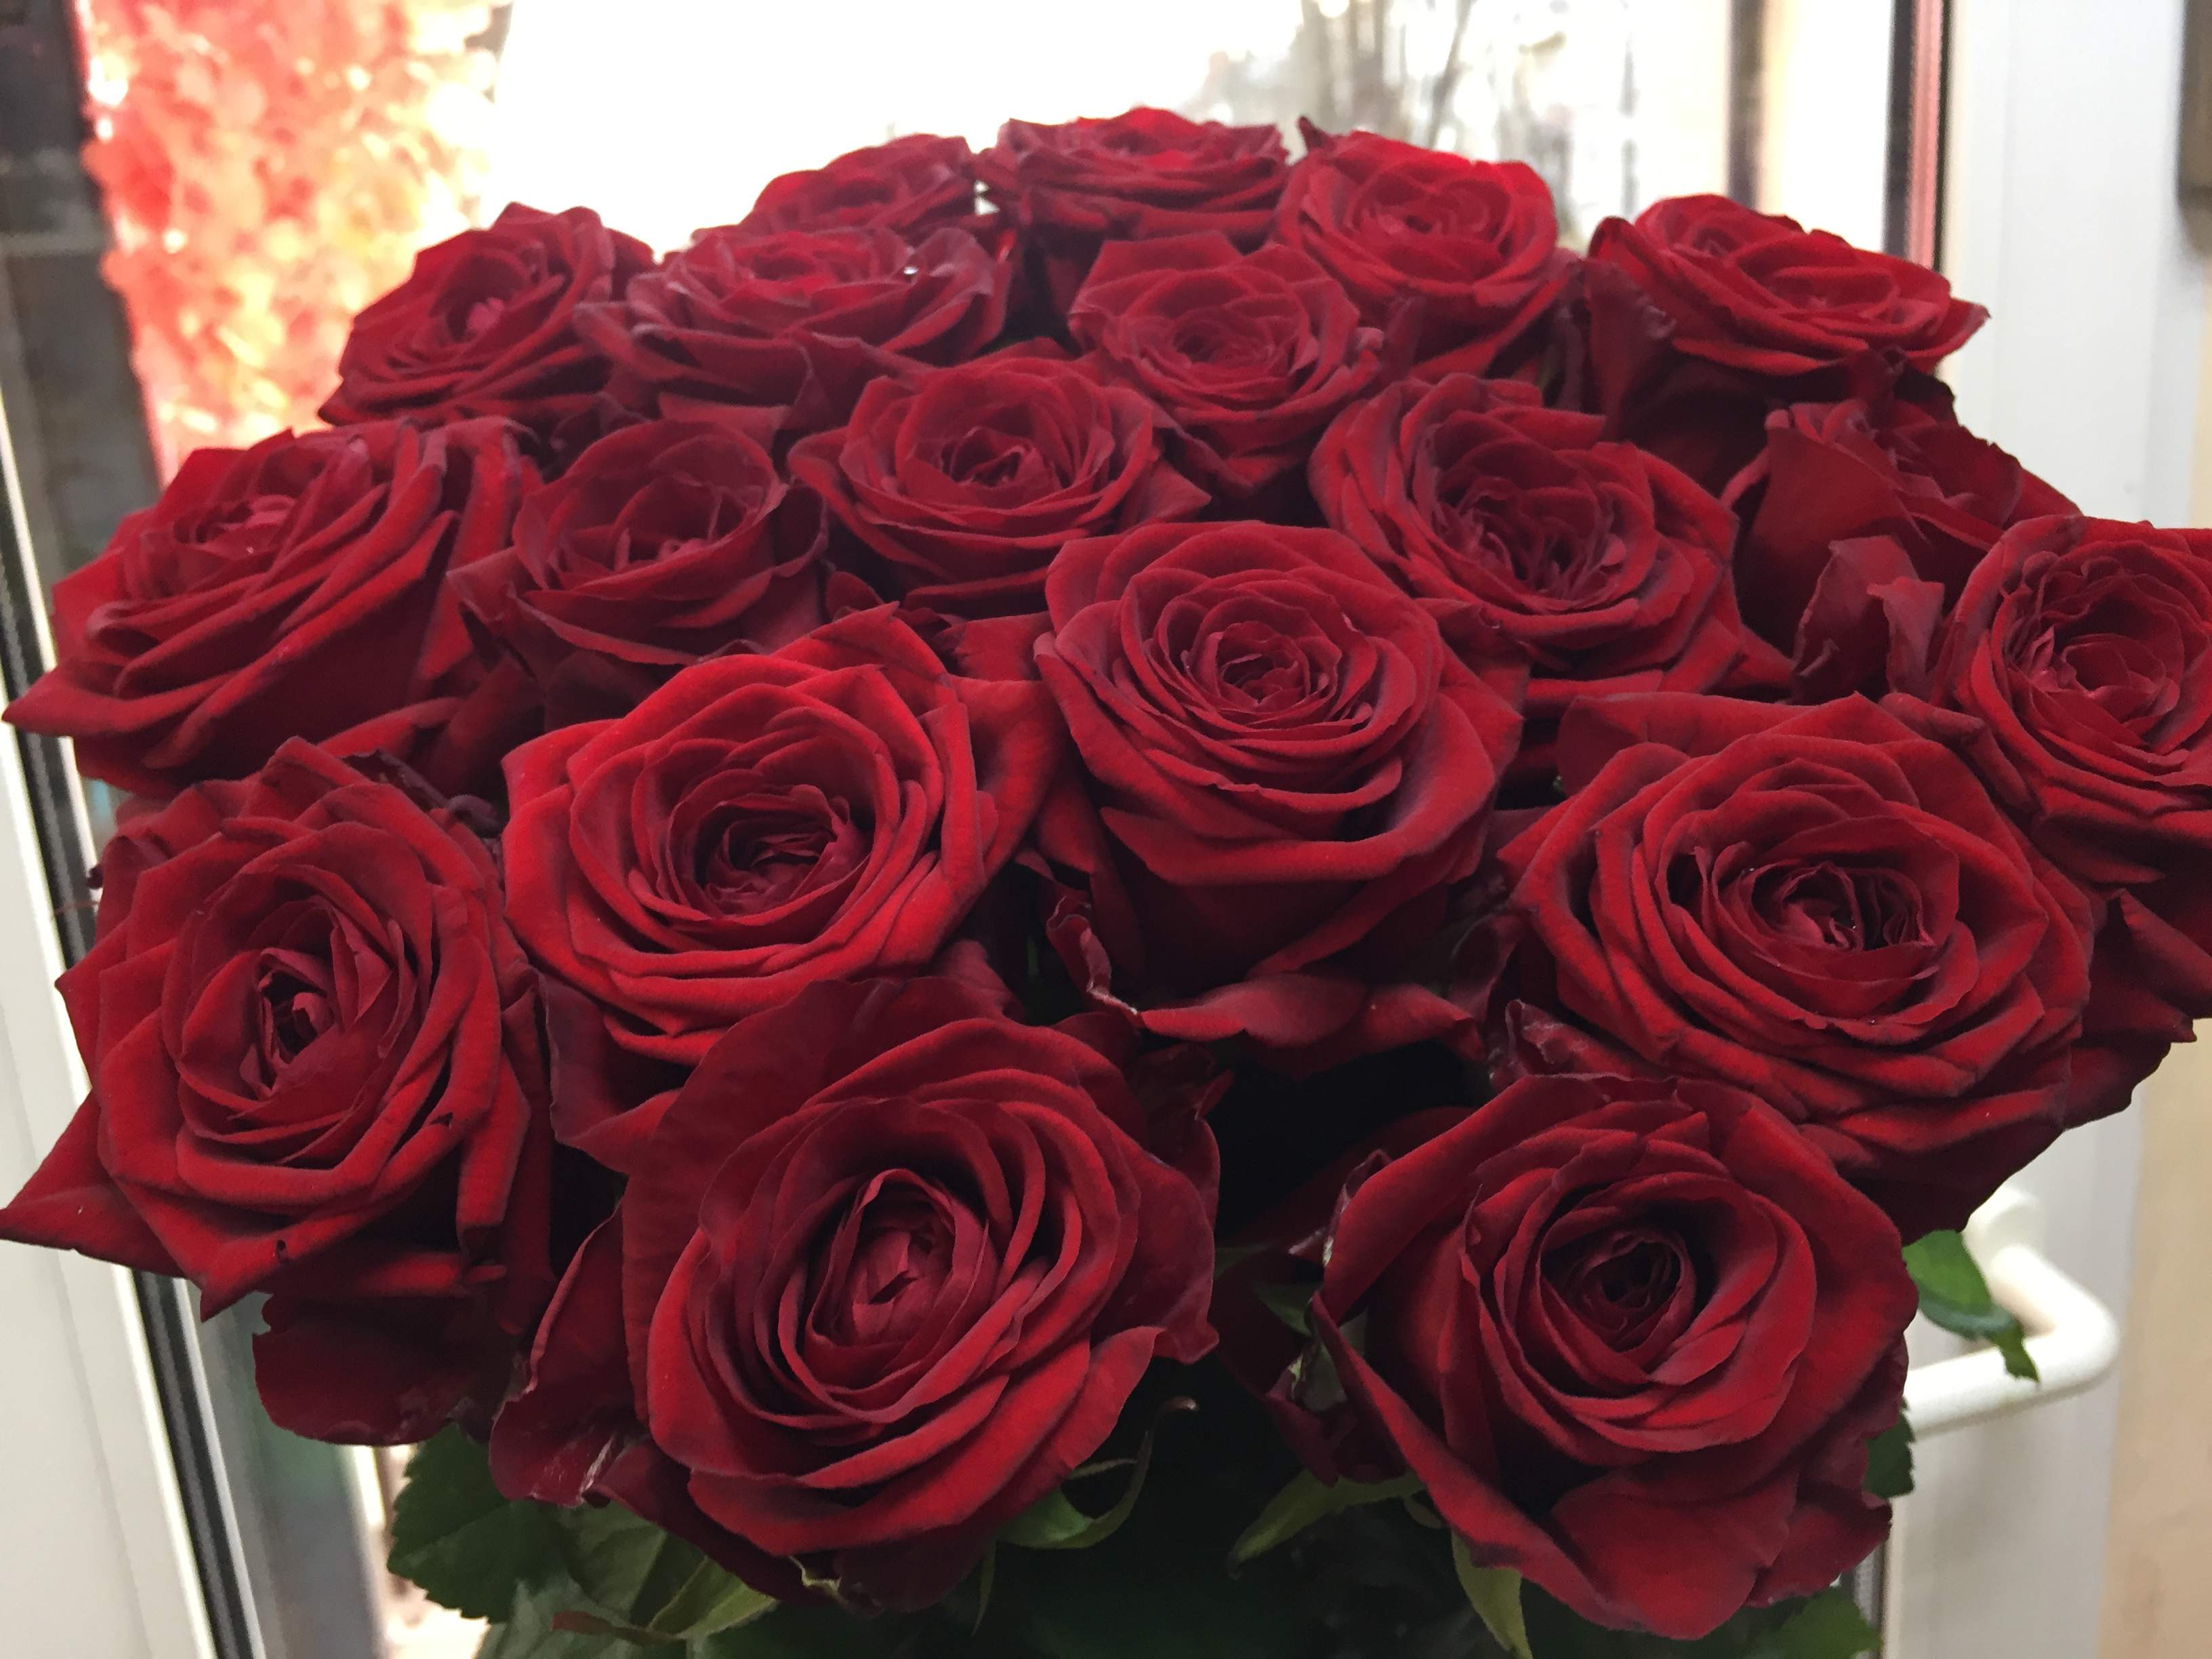 Изысканная роза ред наоми: описание и фото сорта, особенности цветения, уход и другие нюансы